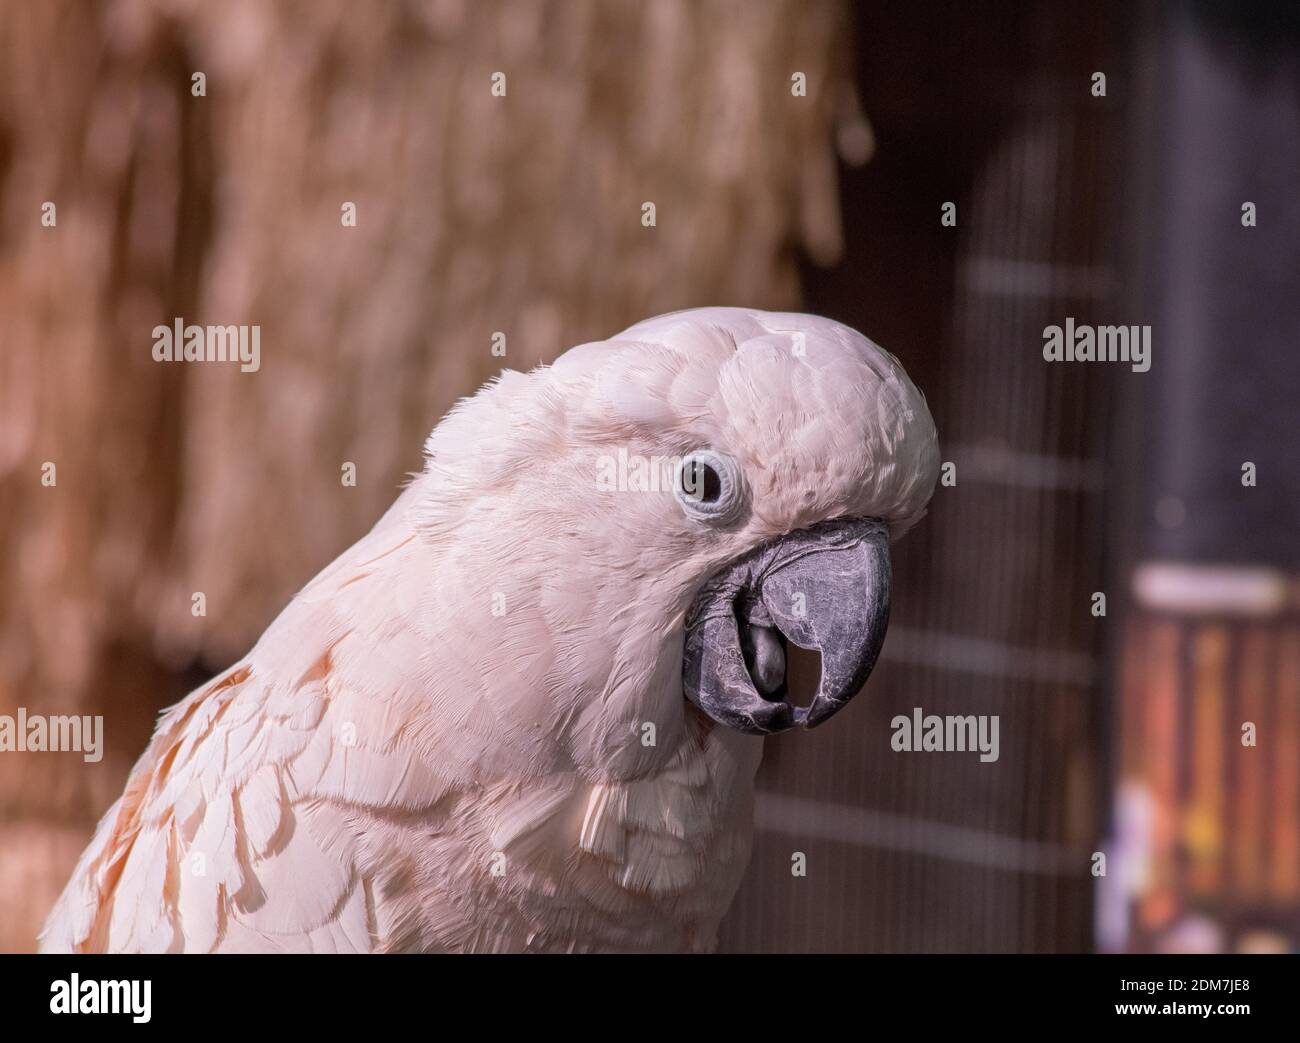 Nahaufnahme Porträt eines Kakadus, Kopf gespannt, Blick auf die Kamera mit offenem Mund Stockfoto